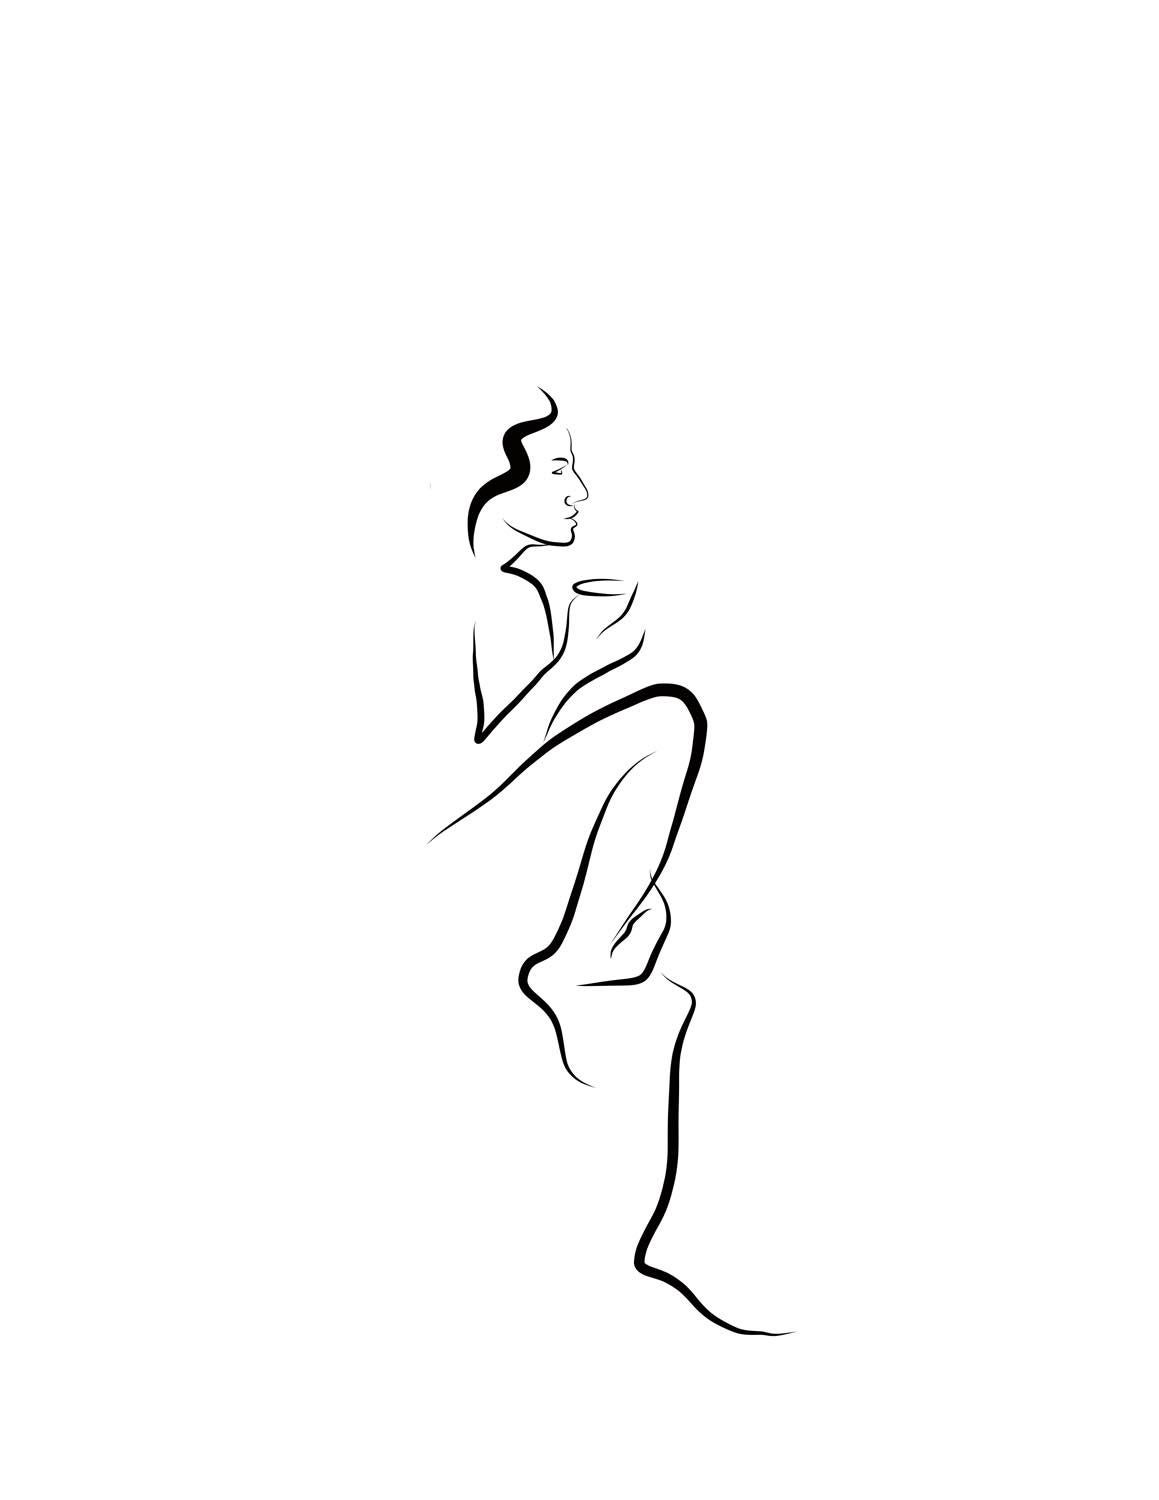 Michael Binkley Nude Print – Haiku #51, 1/50 - Digitale Vektor-Zeichnung Sitzende weibliche Aktfigur Nippel Kaffee